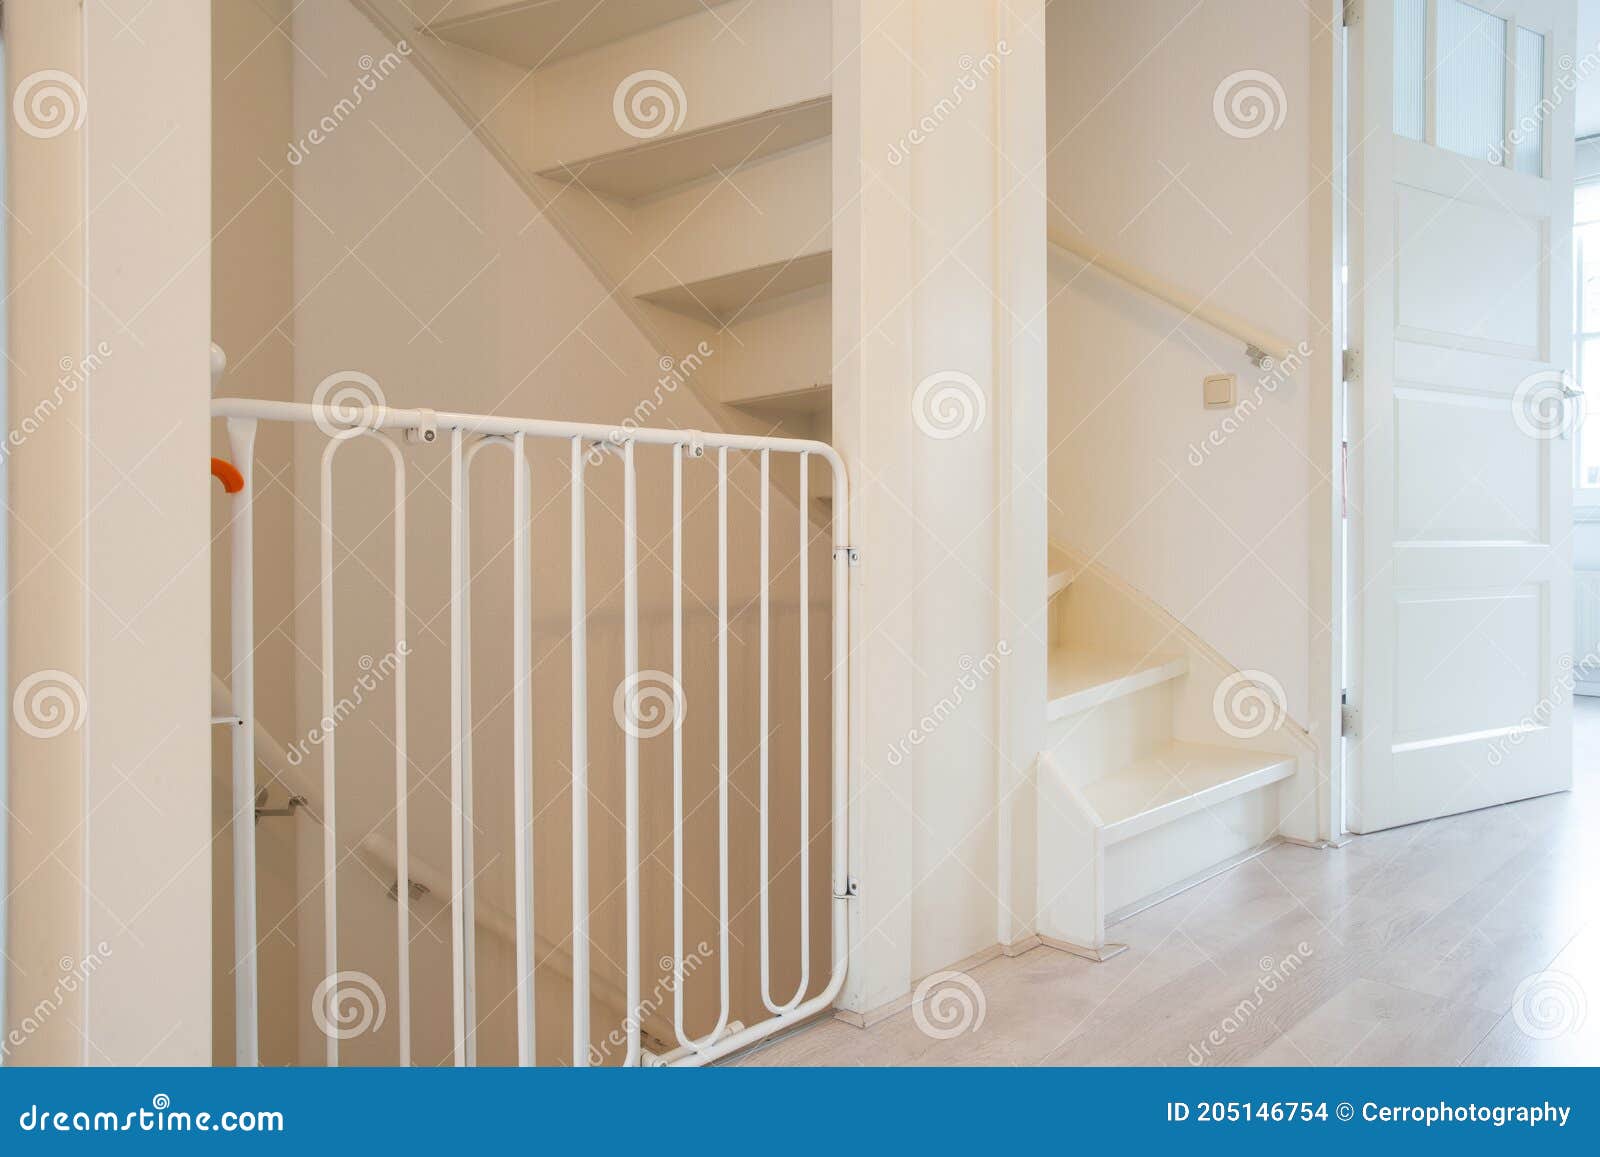 barrière de sécurité Grille porte d'escalier sécurité de bébé